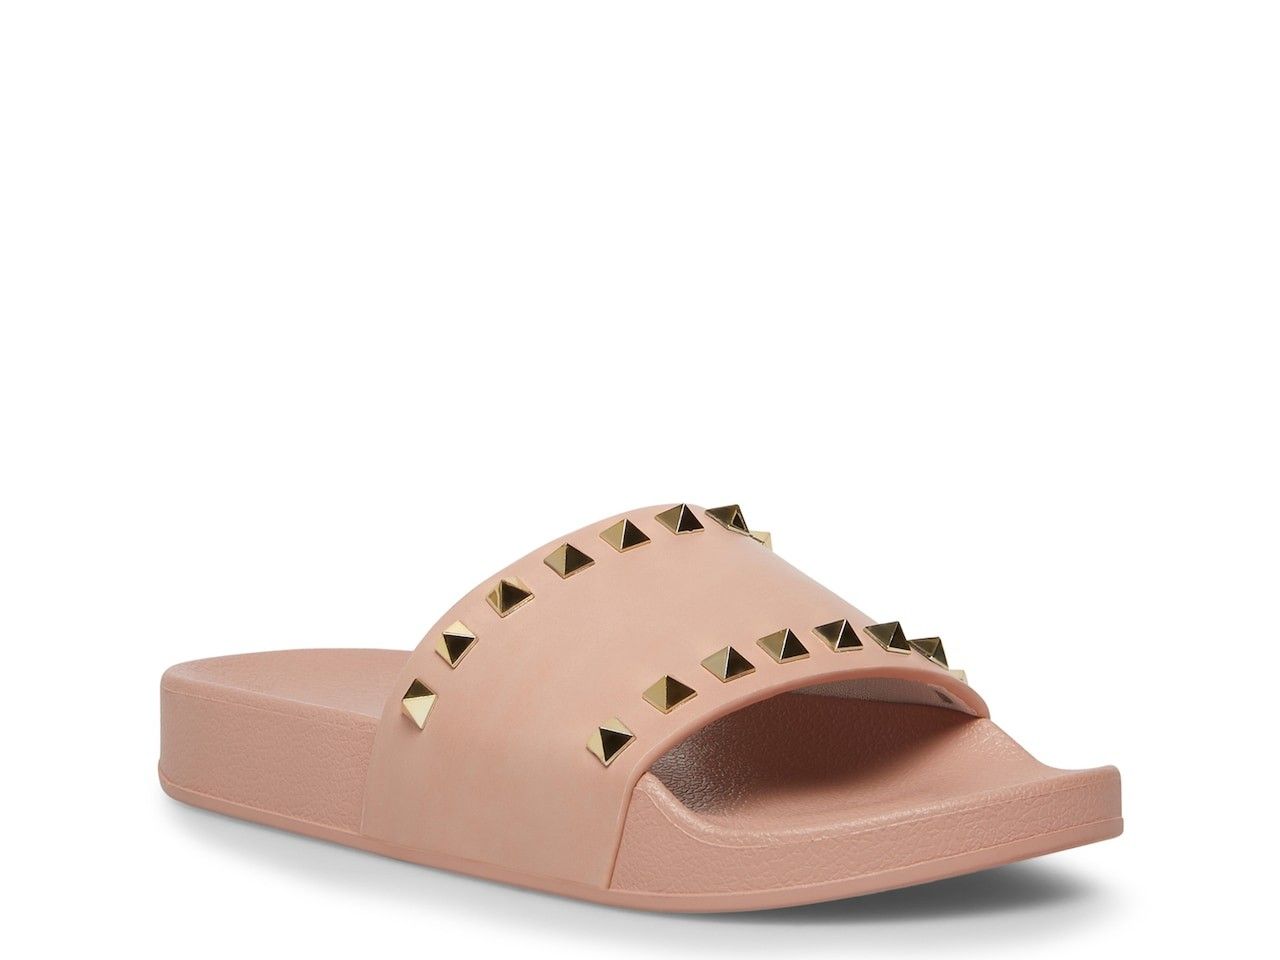 Slide Sandal, Spring Sandals, Slides, Sandals, Spring Shoes, Tan Sandals, Neutral Sandals | DSW